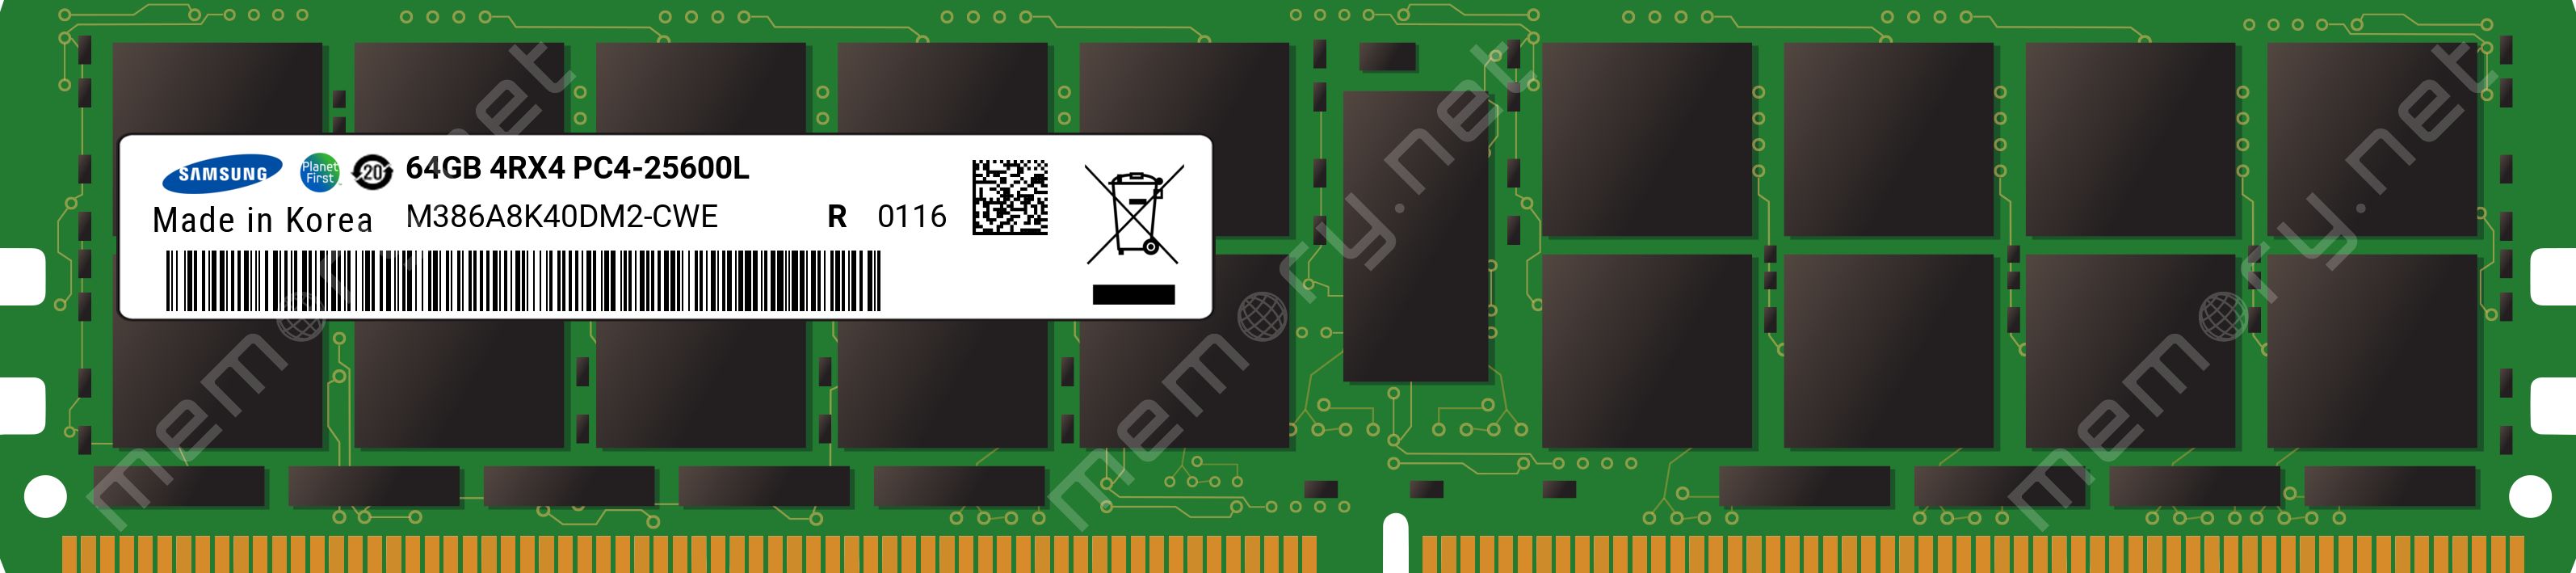 RAM DDR4 LR REG 64GB / PC3200/ECC/ Samsung (4Rx4)_1